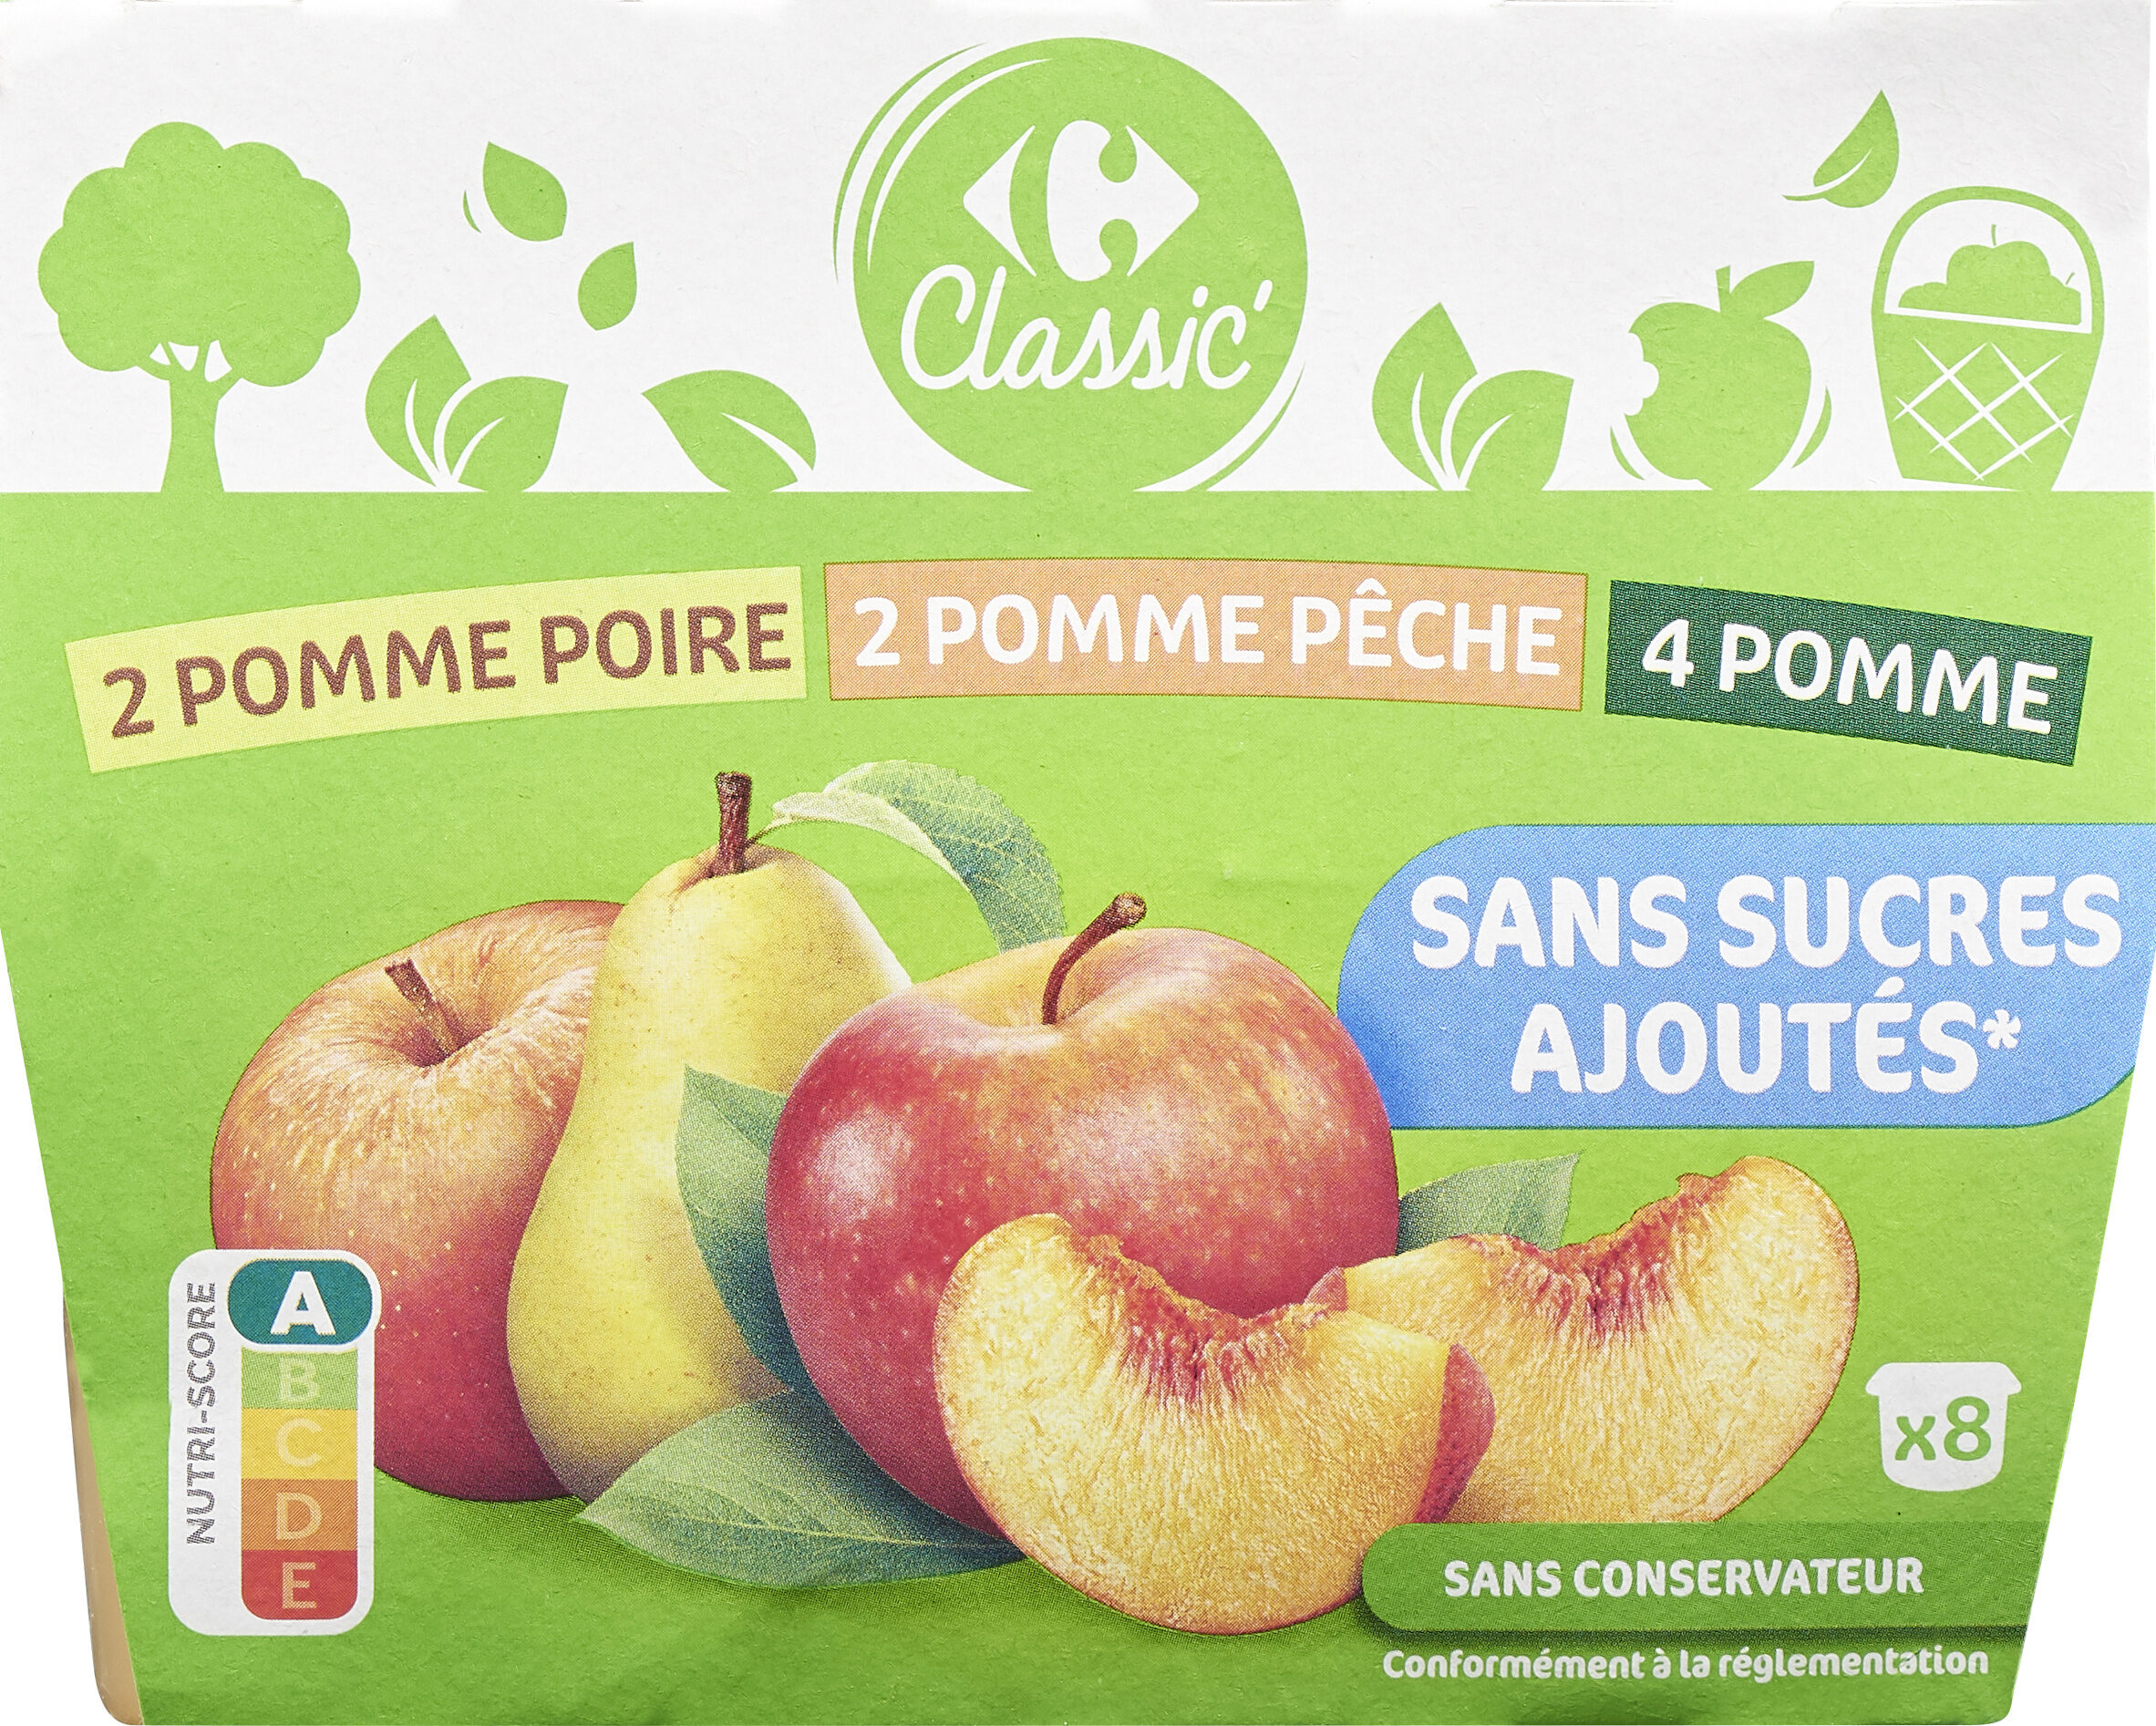 2 Pomme Poire - 2 Pomme Pêche - 4 Pomme Sans sucres ajoutés* - Product - fr